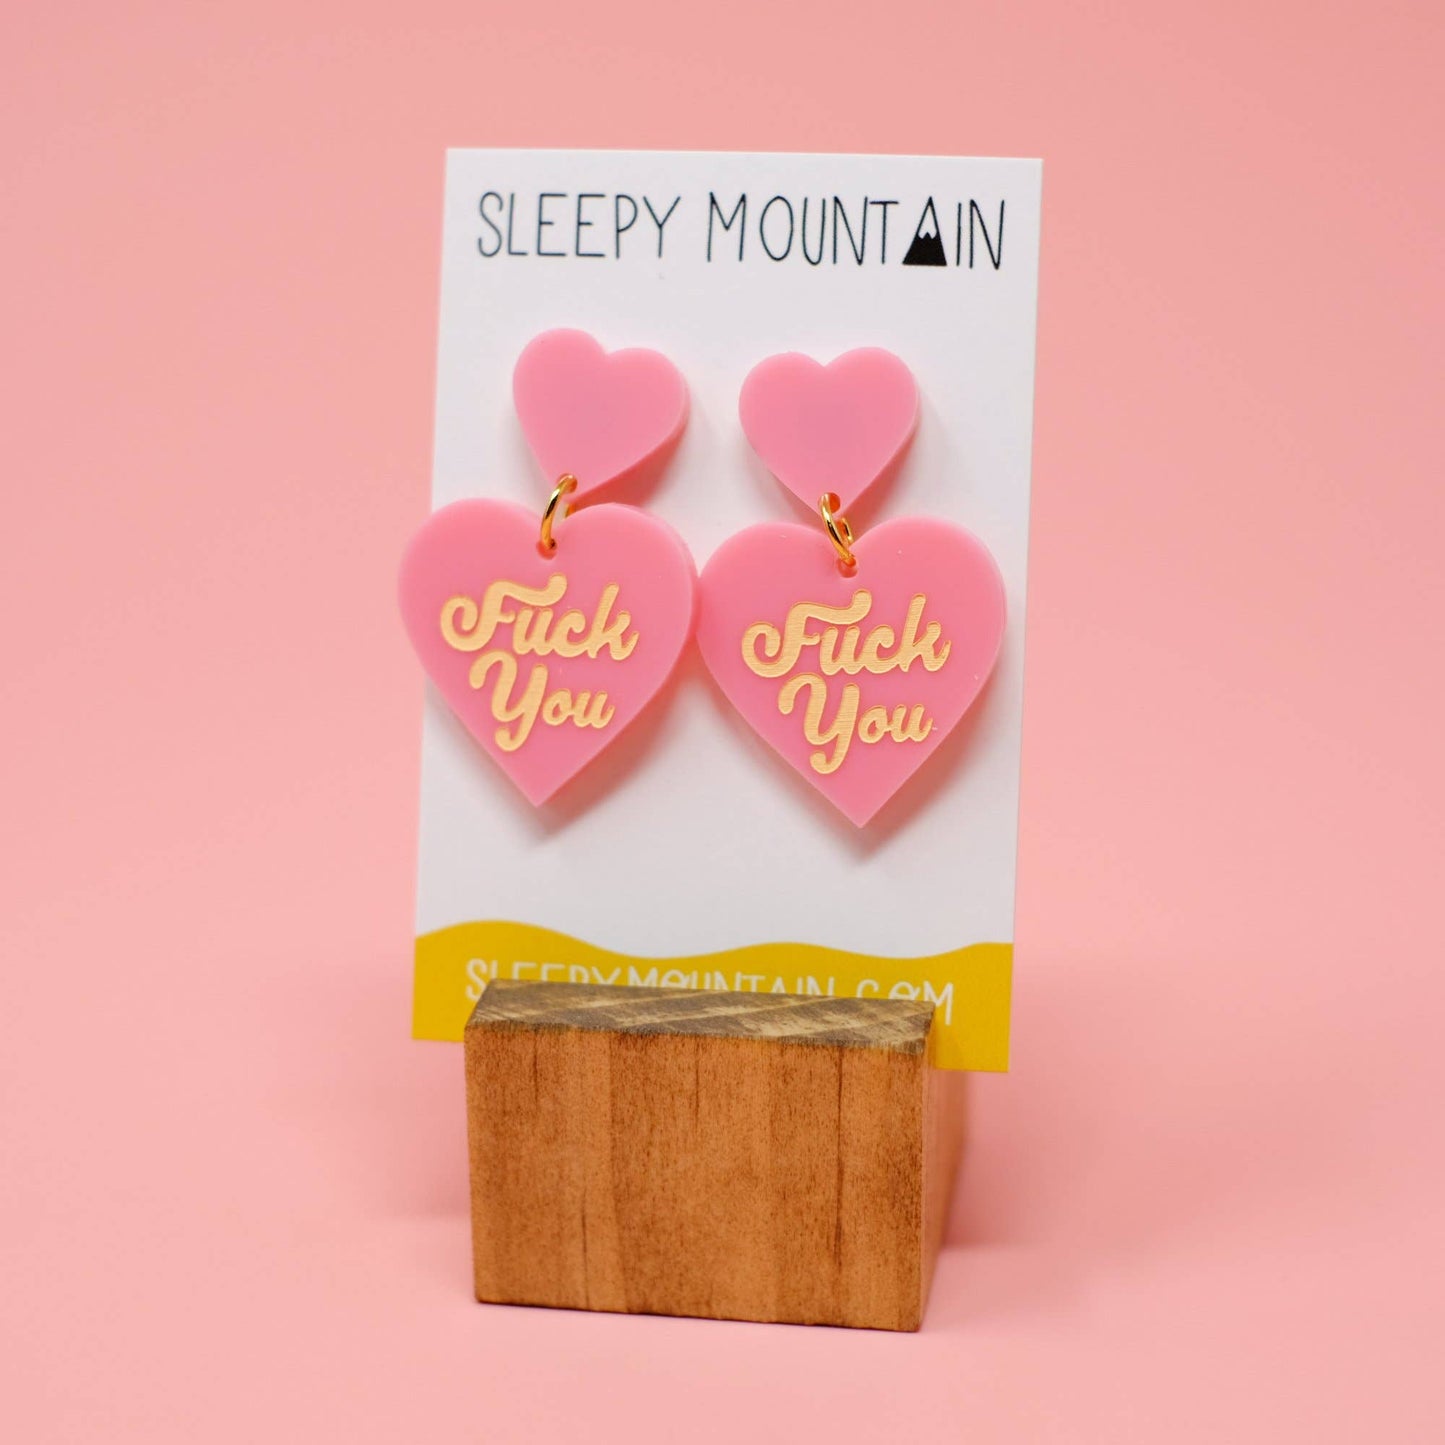 Sleepy Mountain - F U Double Heart Dangles - Pink